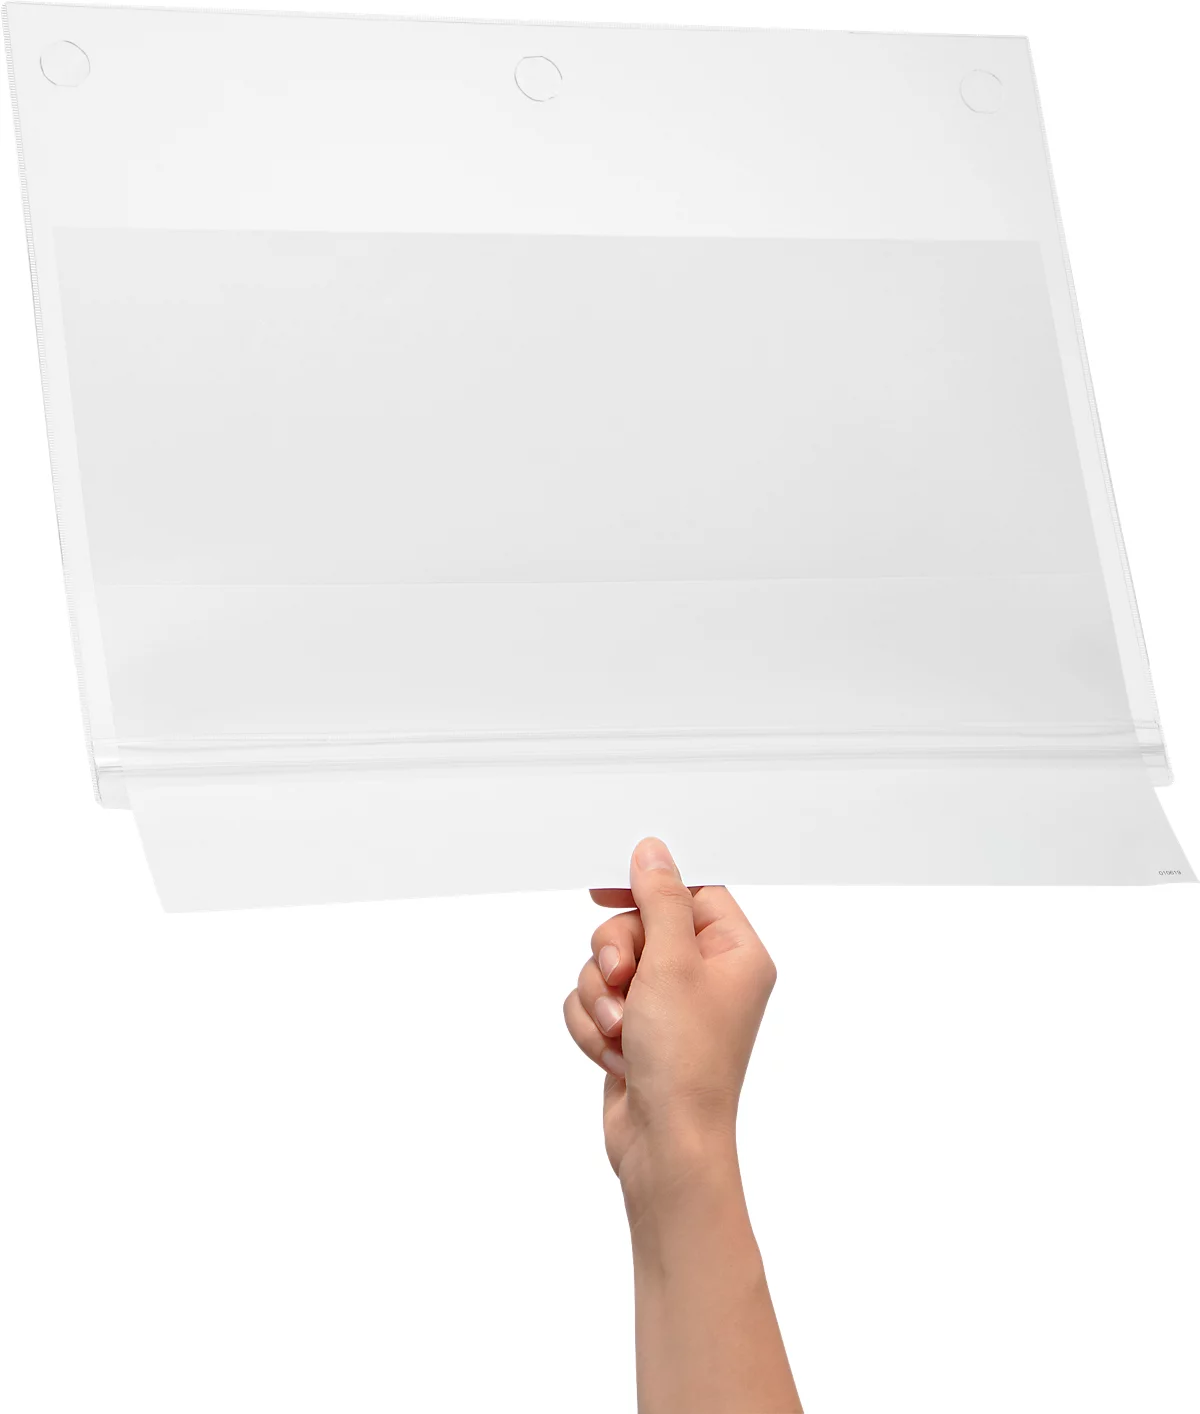 Plakattasche Durable, A3 Hoch- & Querformat, 2-seitig, für bis zu 2 Blatt, selbstklebend, wasserdicht, B 335 x T 0,6 x H 445 mm, transparent, 5 Stück